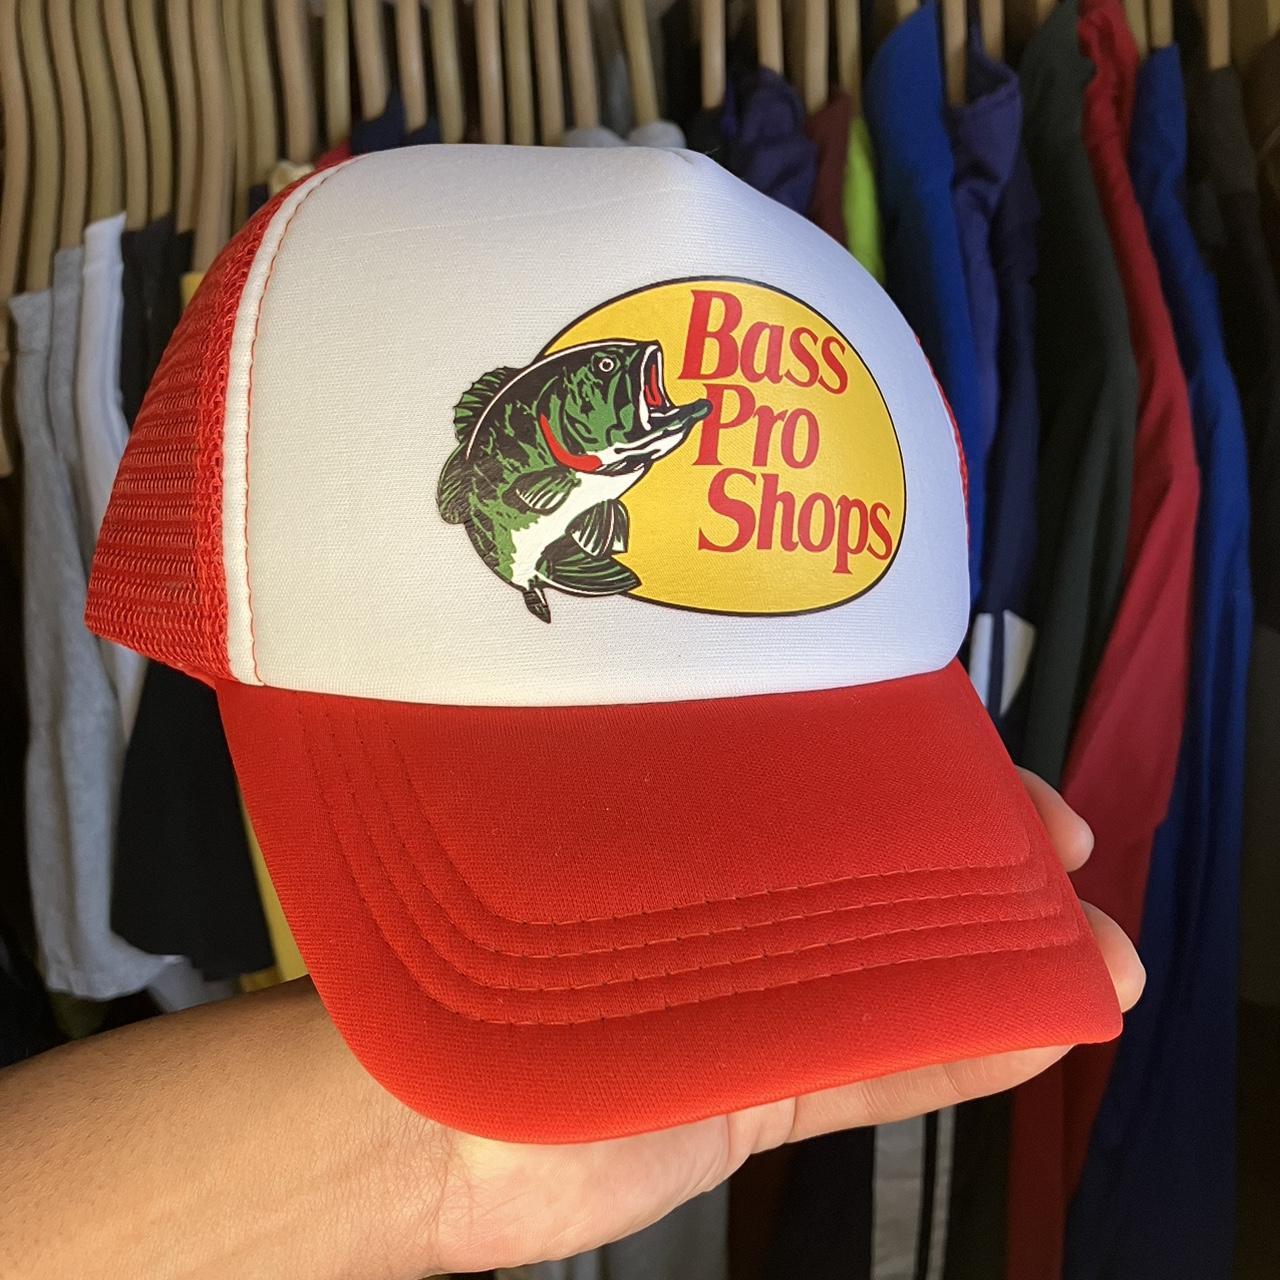 Bass pro shop trucker hat -send offers - Depop